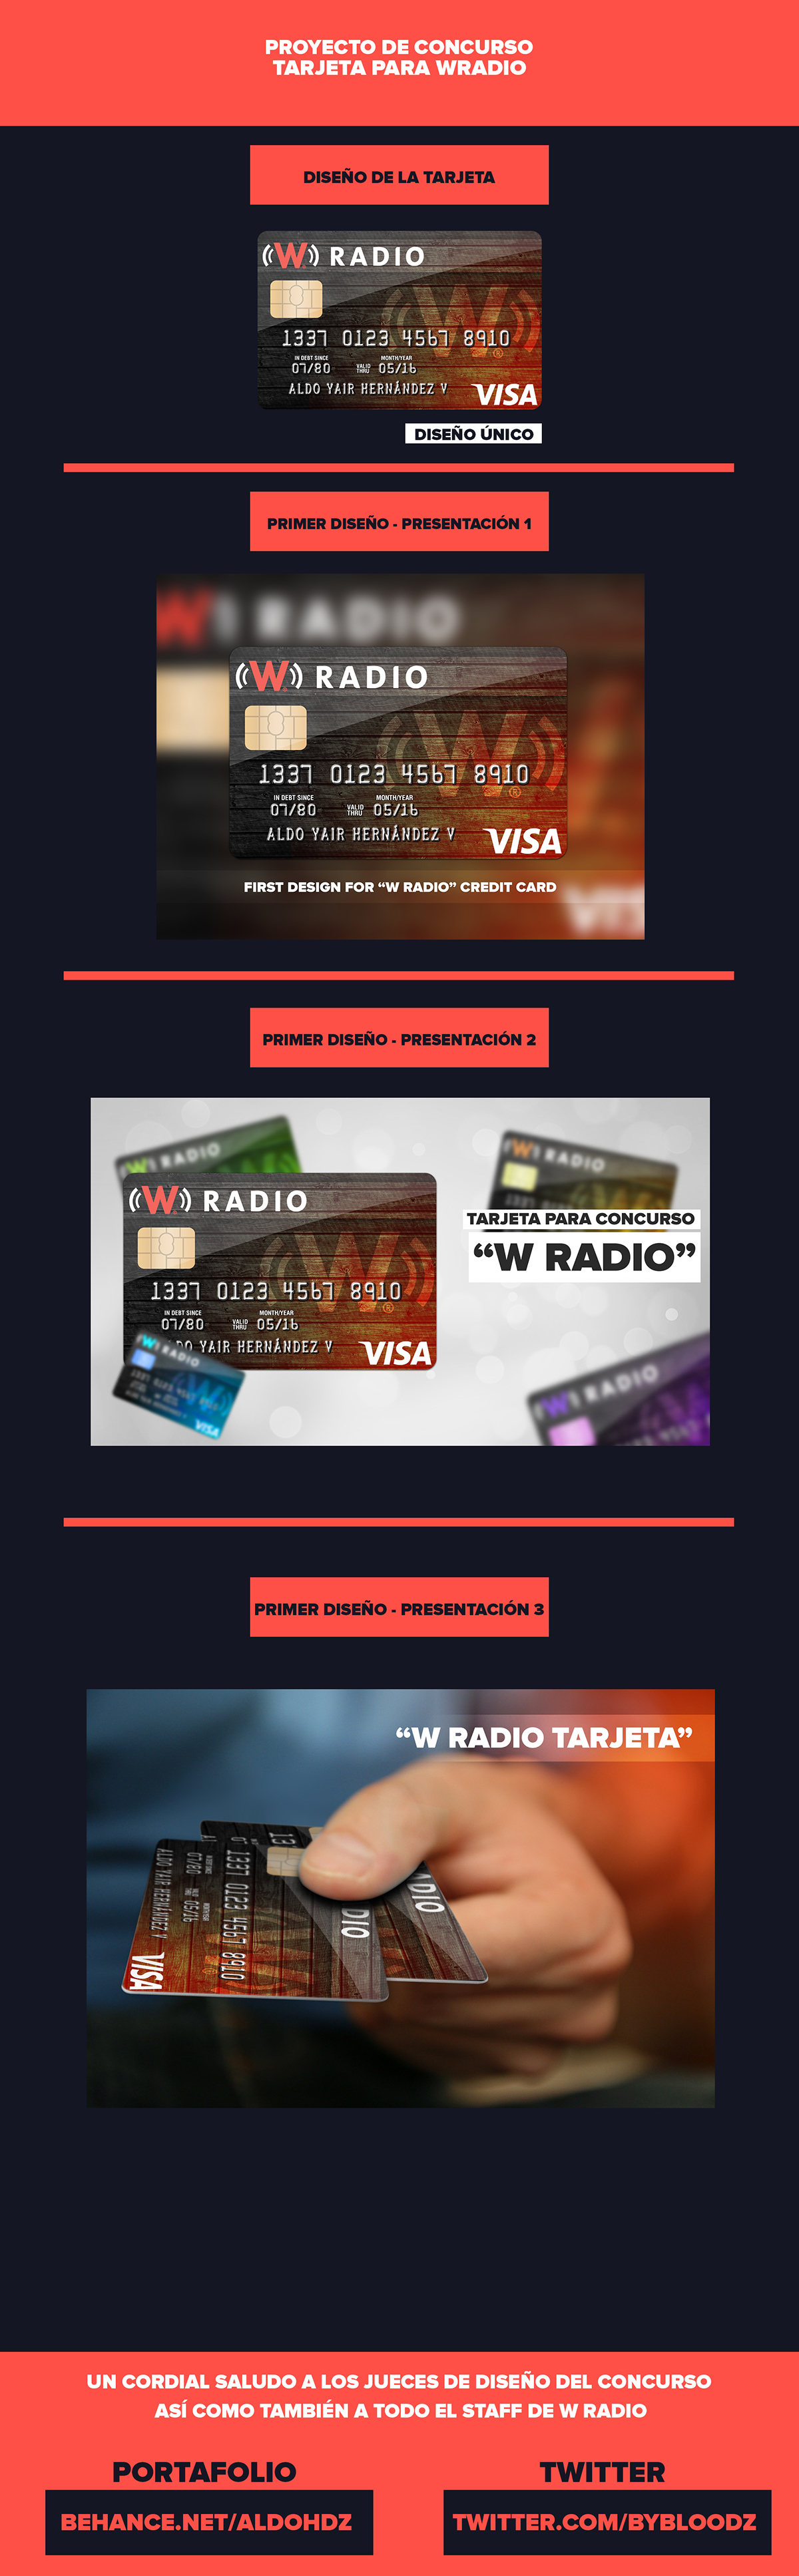 w radio tarjeta crédito